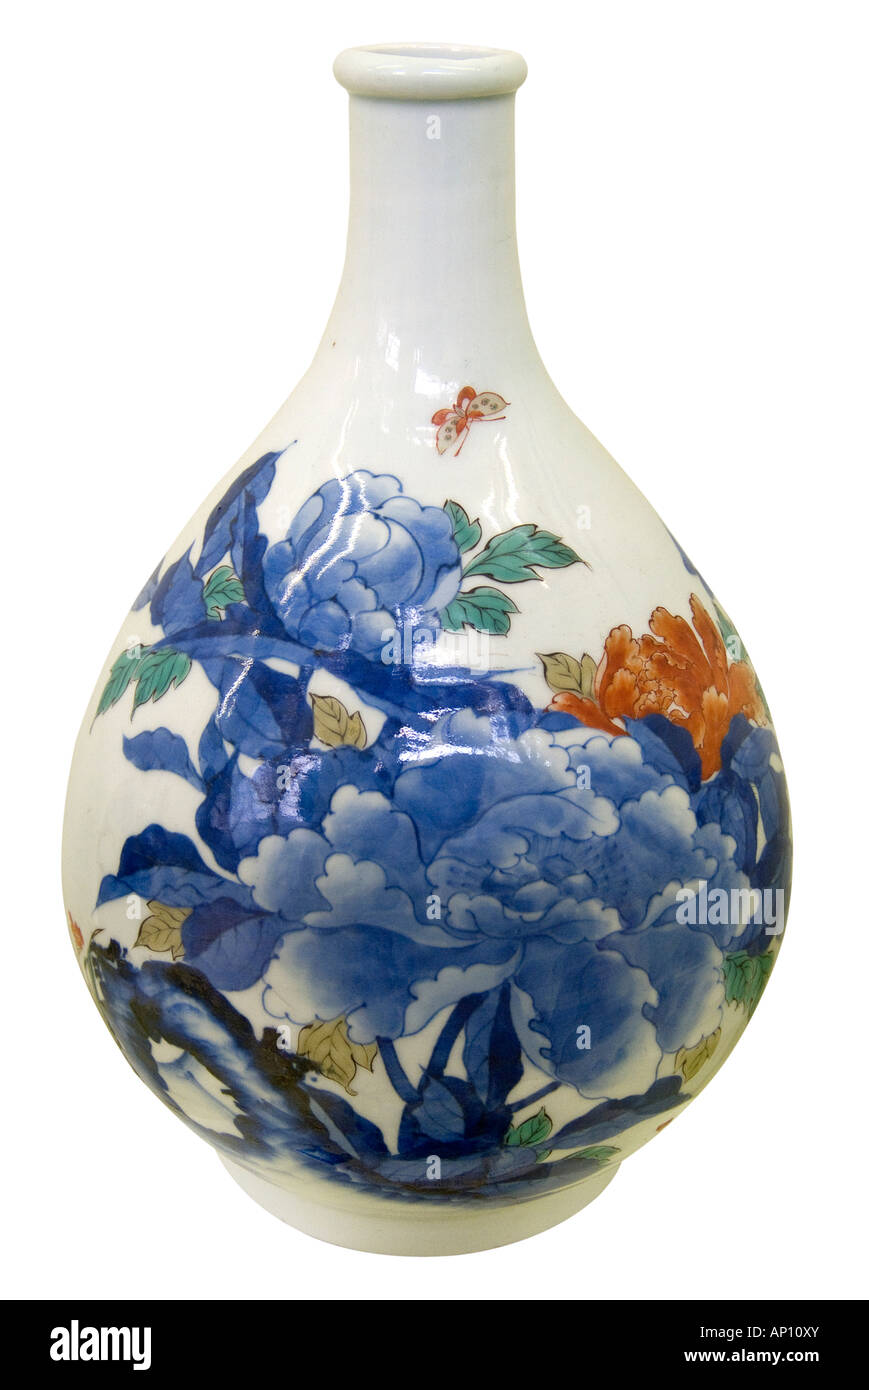 edo period enamel 1600 1868 porcelain japan kano style kutani vase Stock Photo